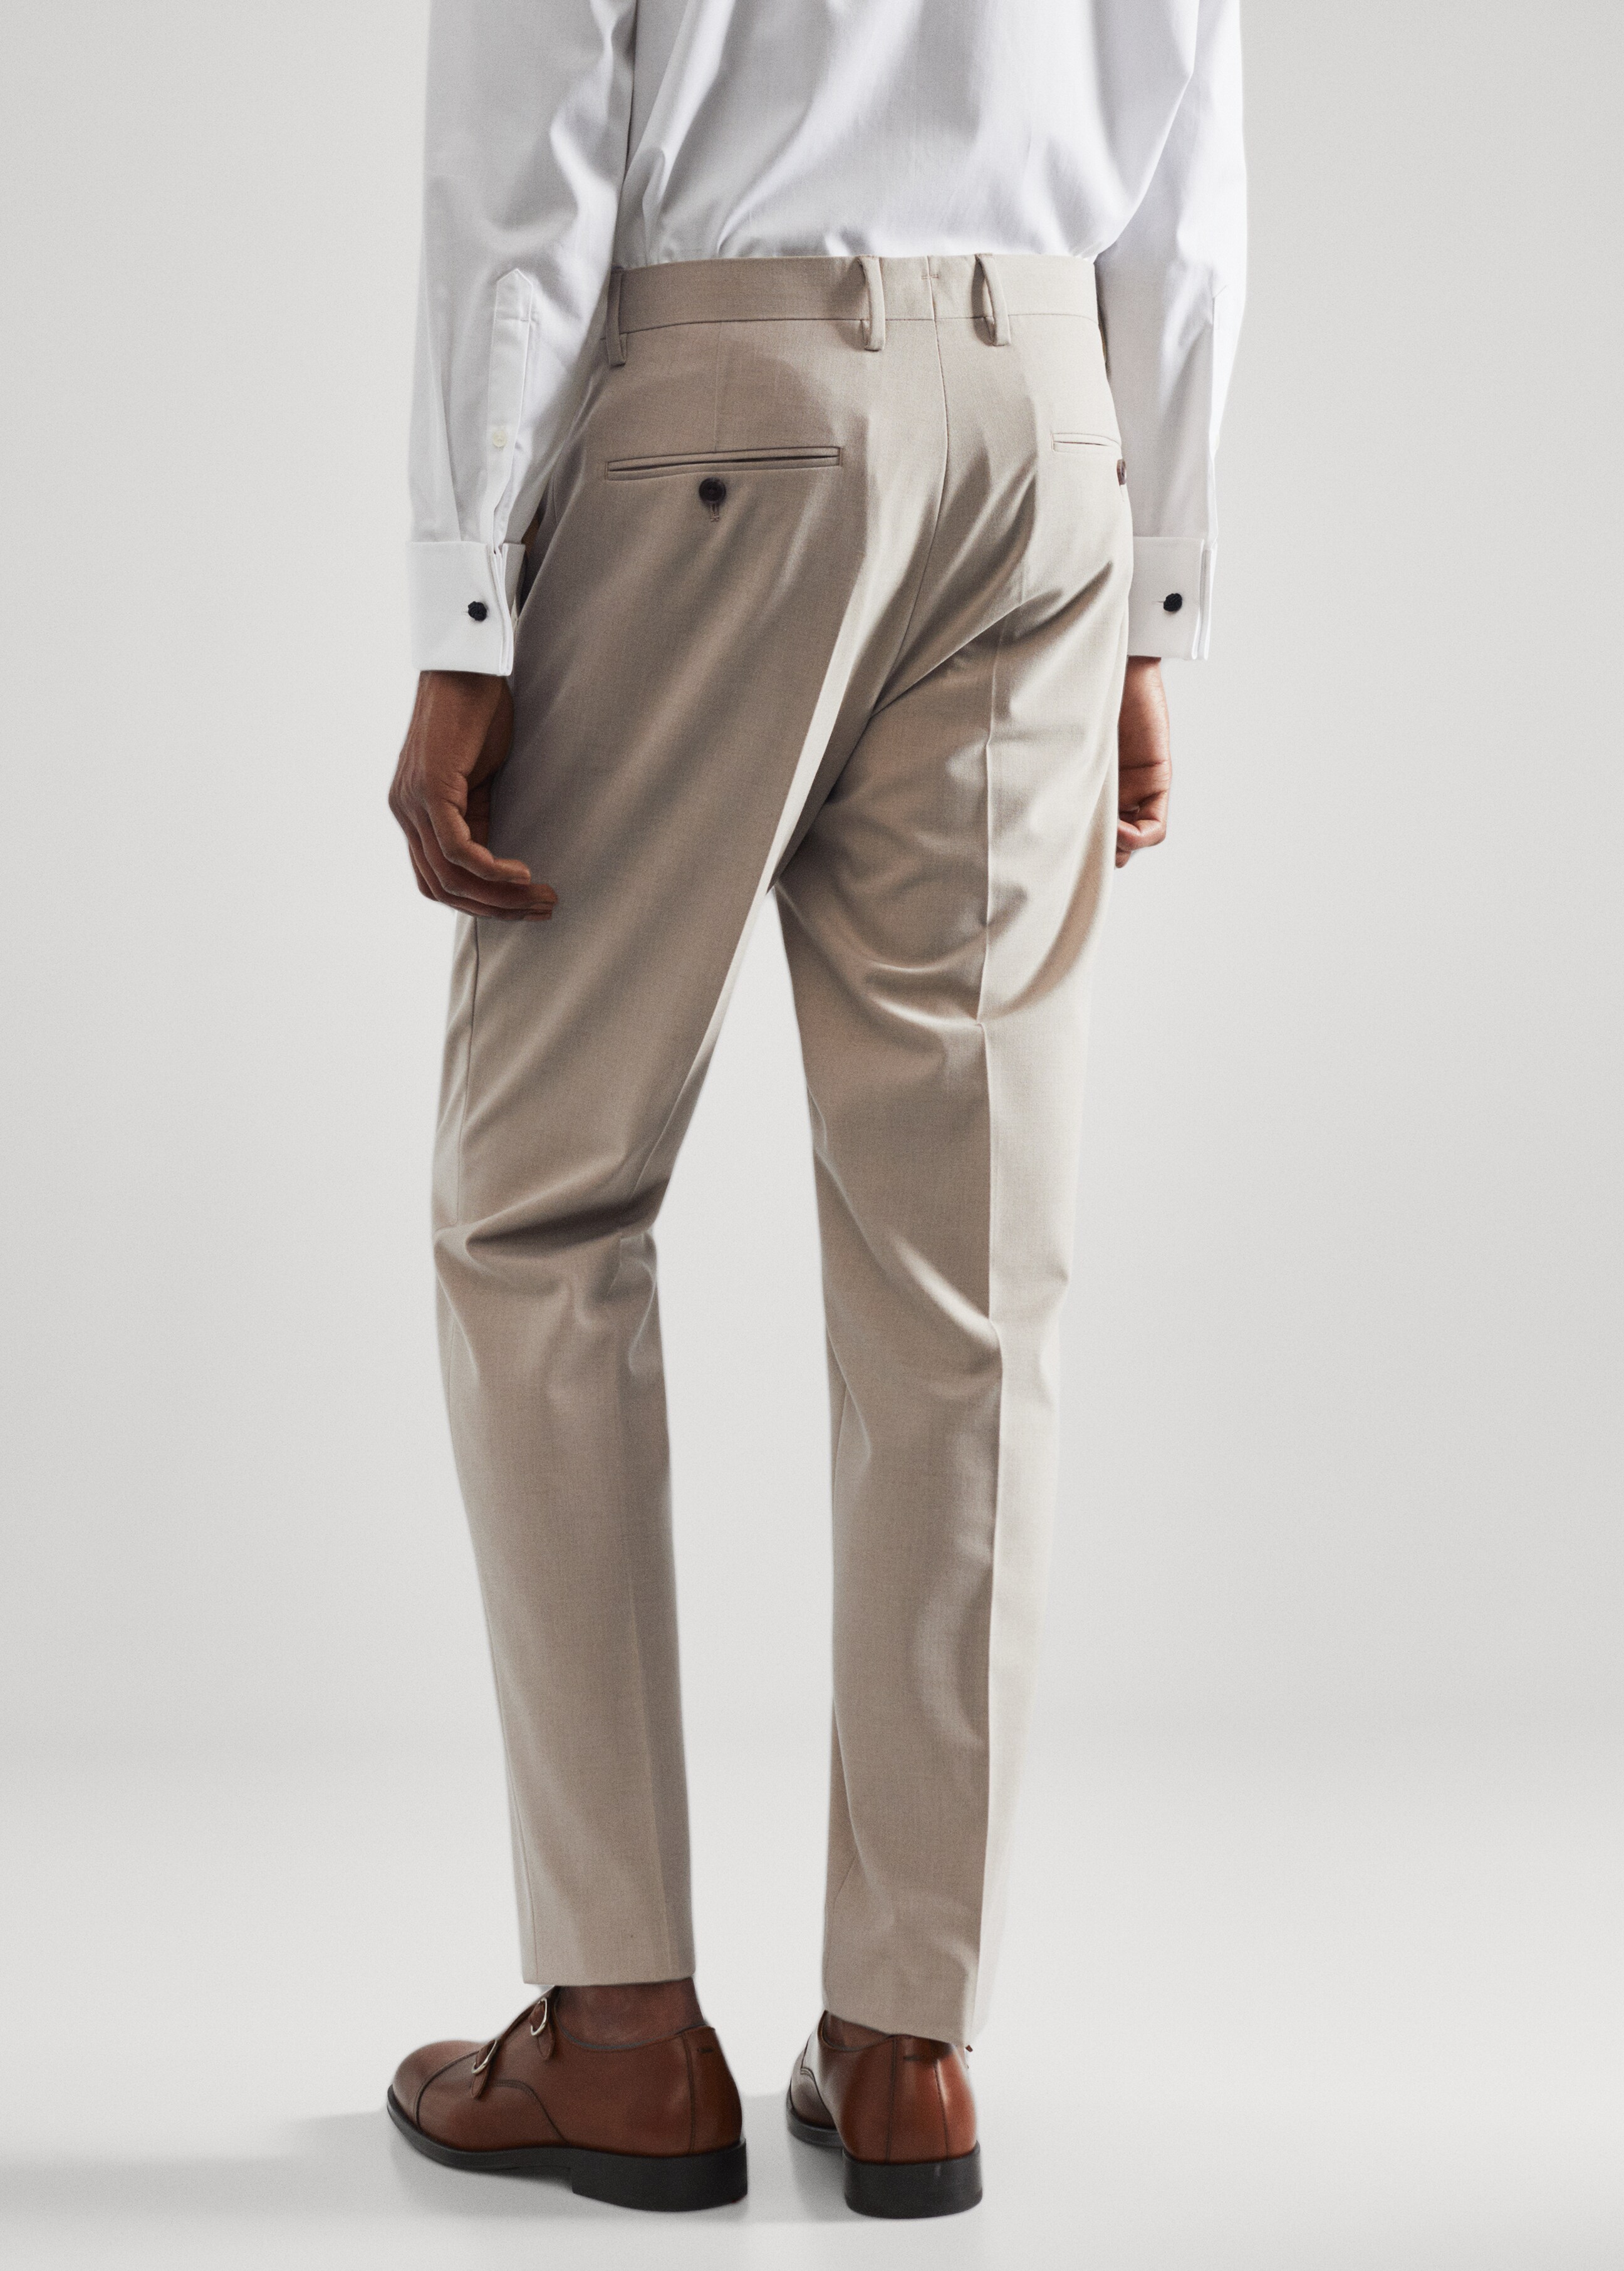 Pantalón traje slim fit tejido strech - Reverso del artículo